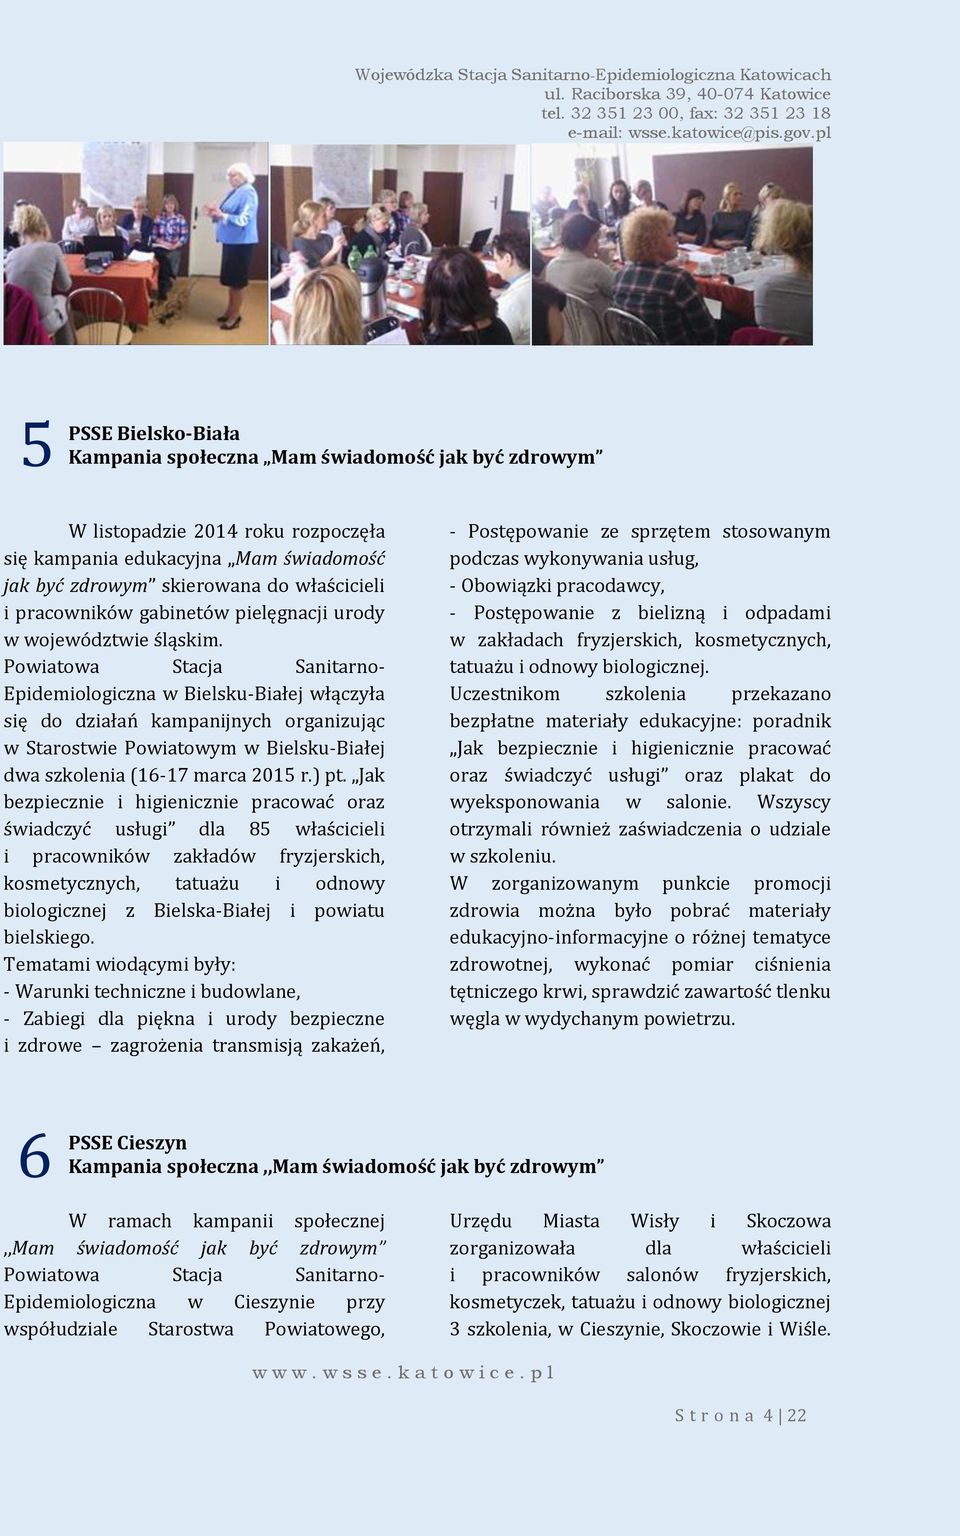 Powiatowa Stacja Sanitarno- Epidemiologiczna w Bielsku-Białej włączyła się do działań kampanijnych organizując w Starostwie Powiatowym w Bielsku-Białej dwa szkolenia (16-17 marca 2015 r.) pt.